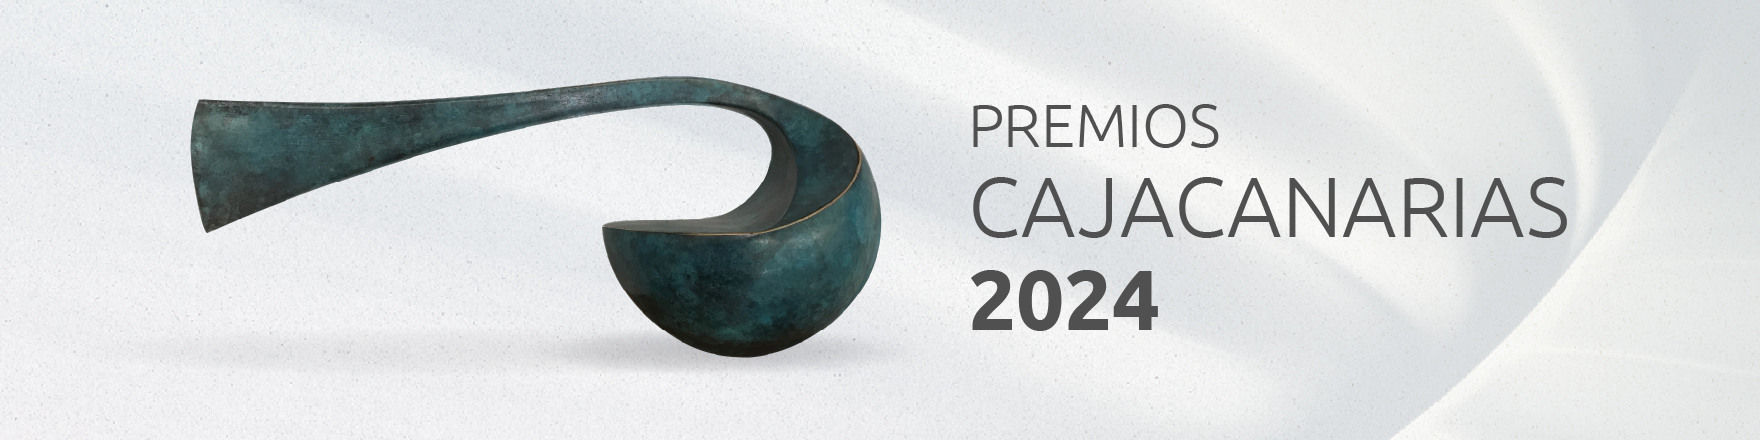 Premios CajaCanarias 2024